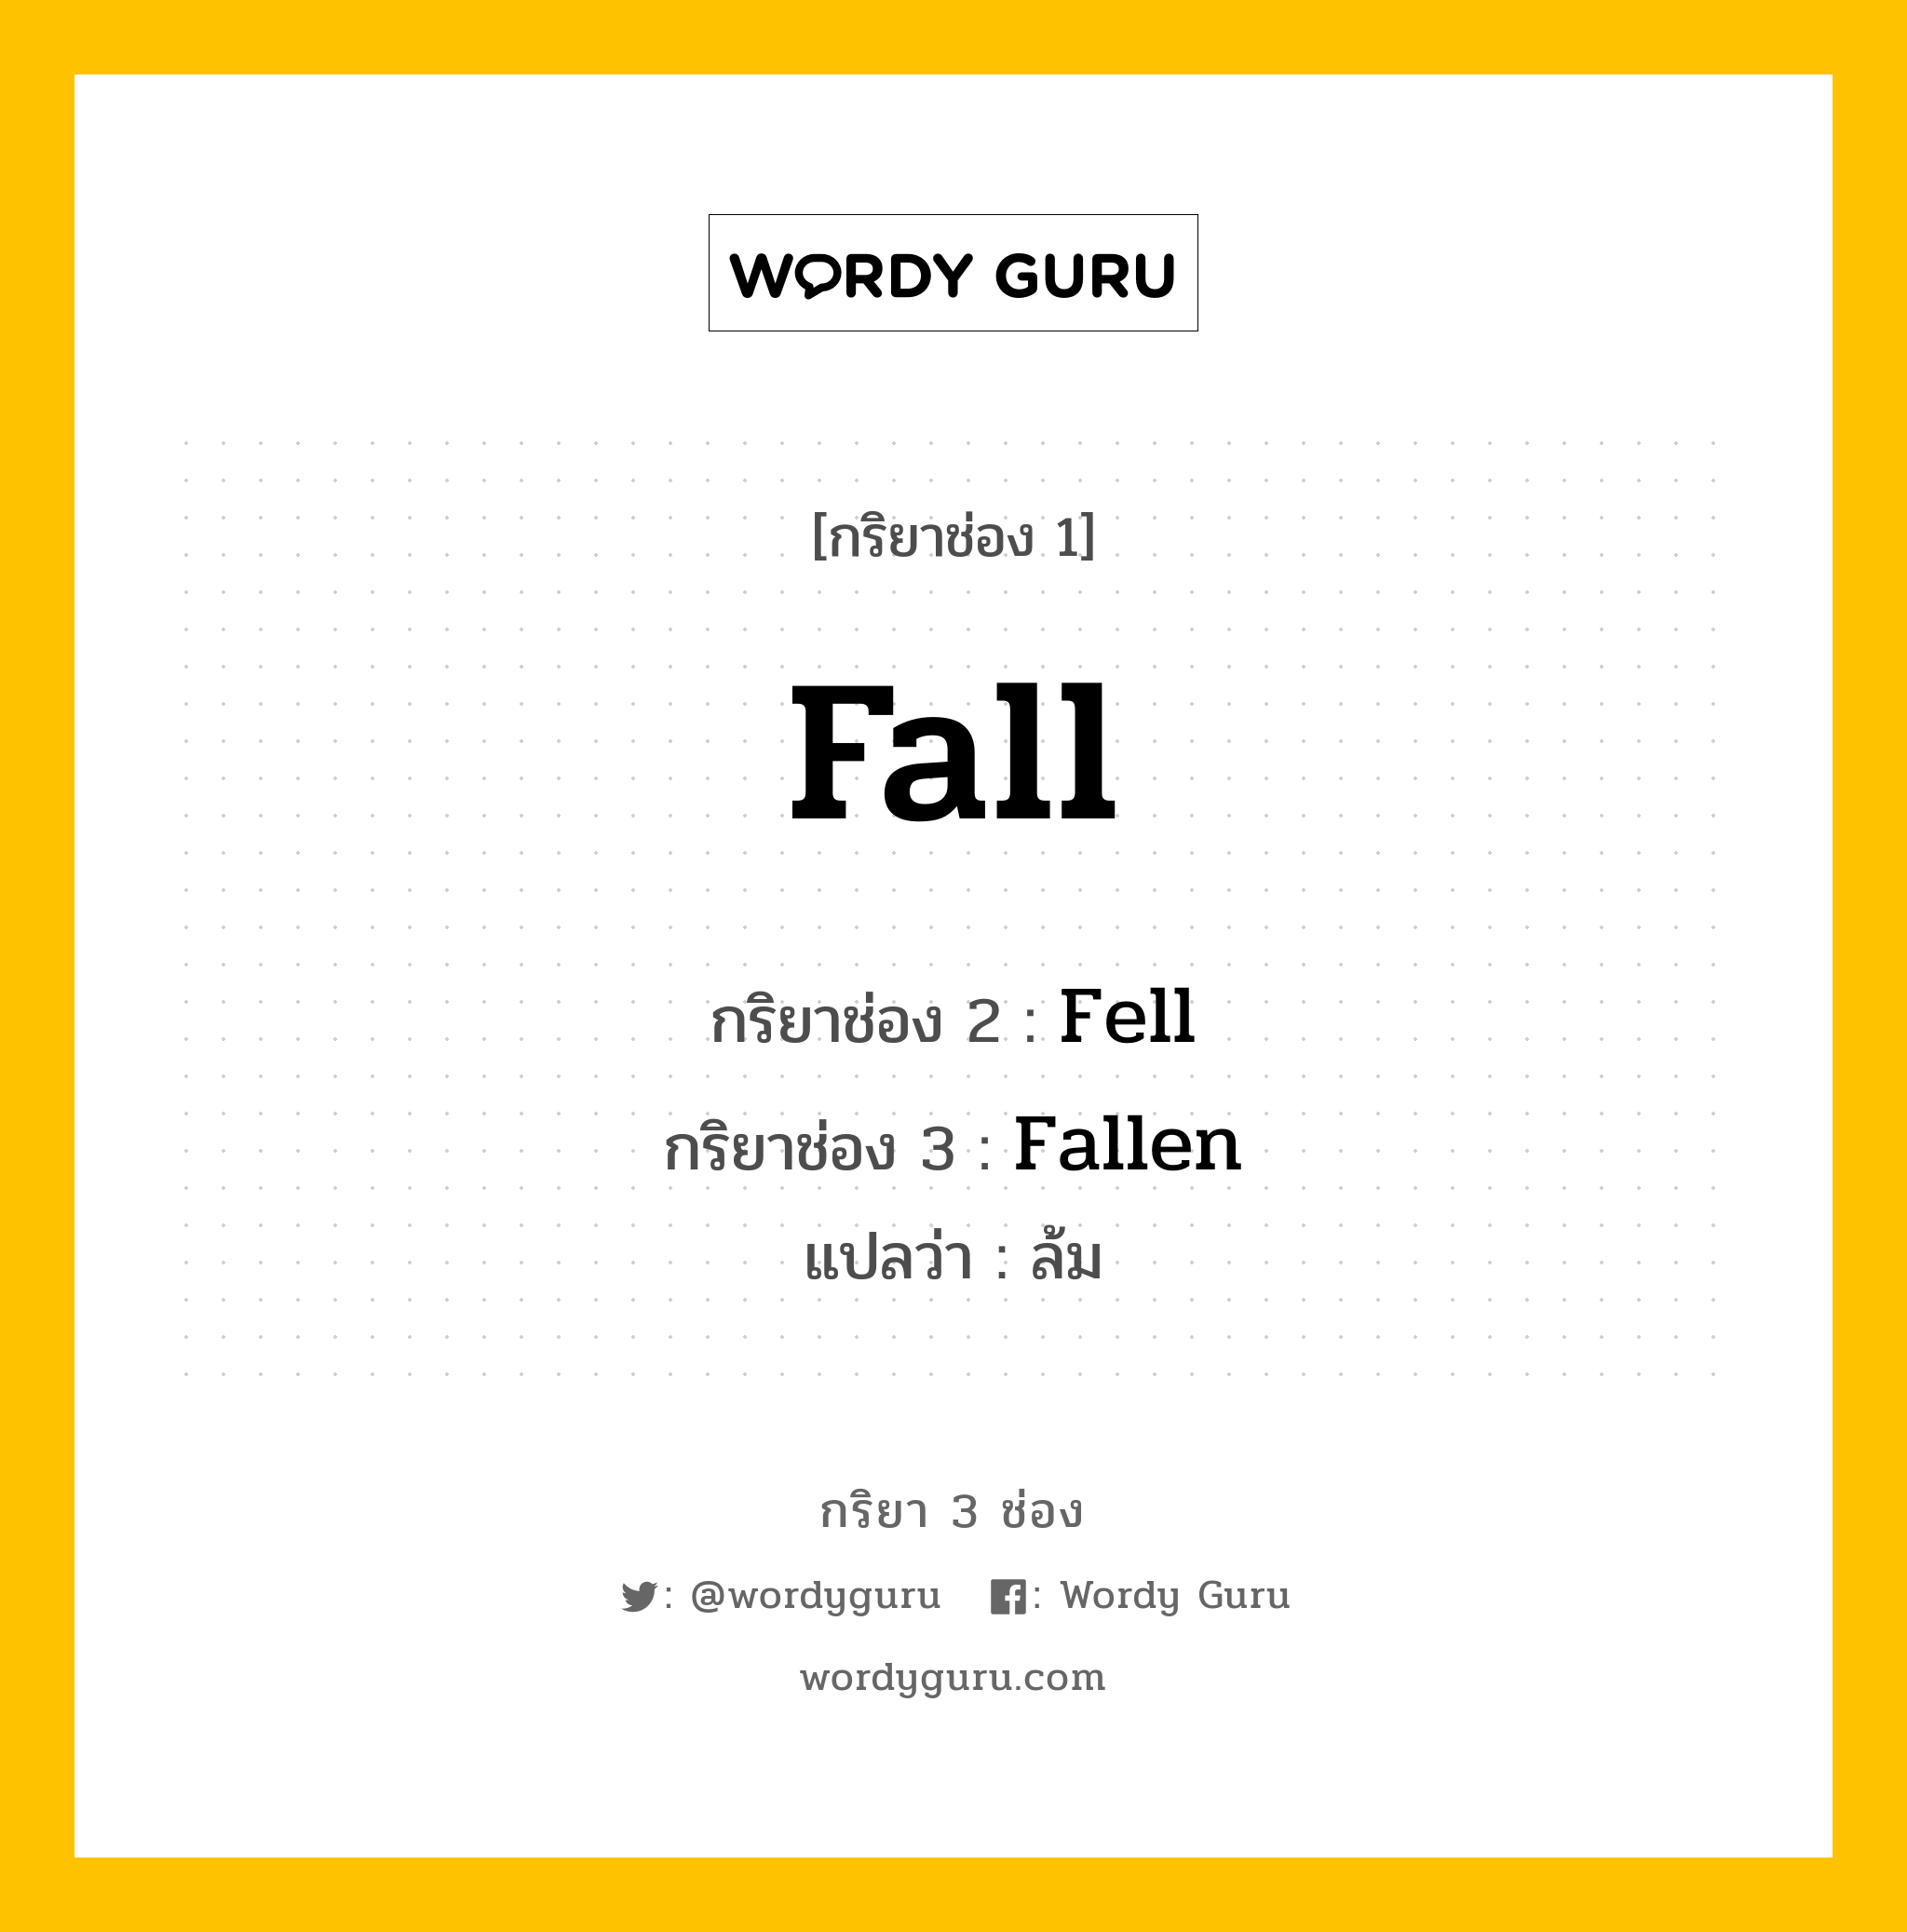 Fall มีกริยา 3 ช่องอะไรบ้าง? คำศัพท์ในกลุ่มประเภท Irregular Verb, กริยาช่อง 1 Fall กริยาช่อง 2 Fell กริยาช่อง 3 Fallen แปลว่า ล้ม หมวด Irregular Verb